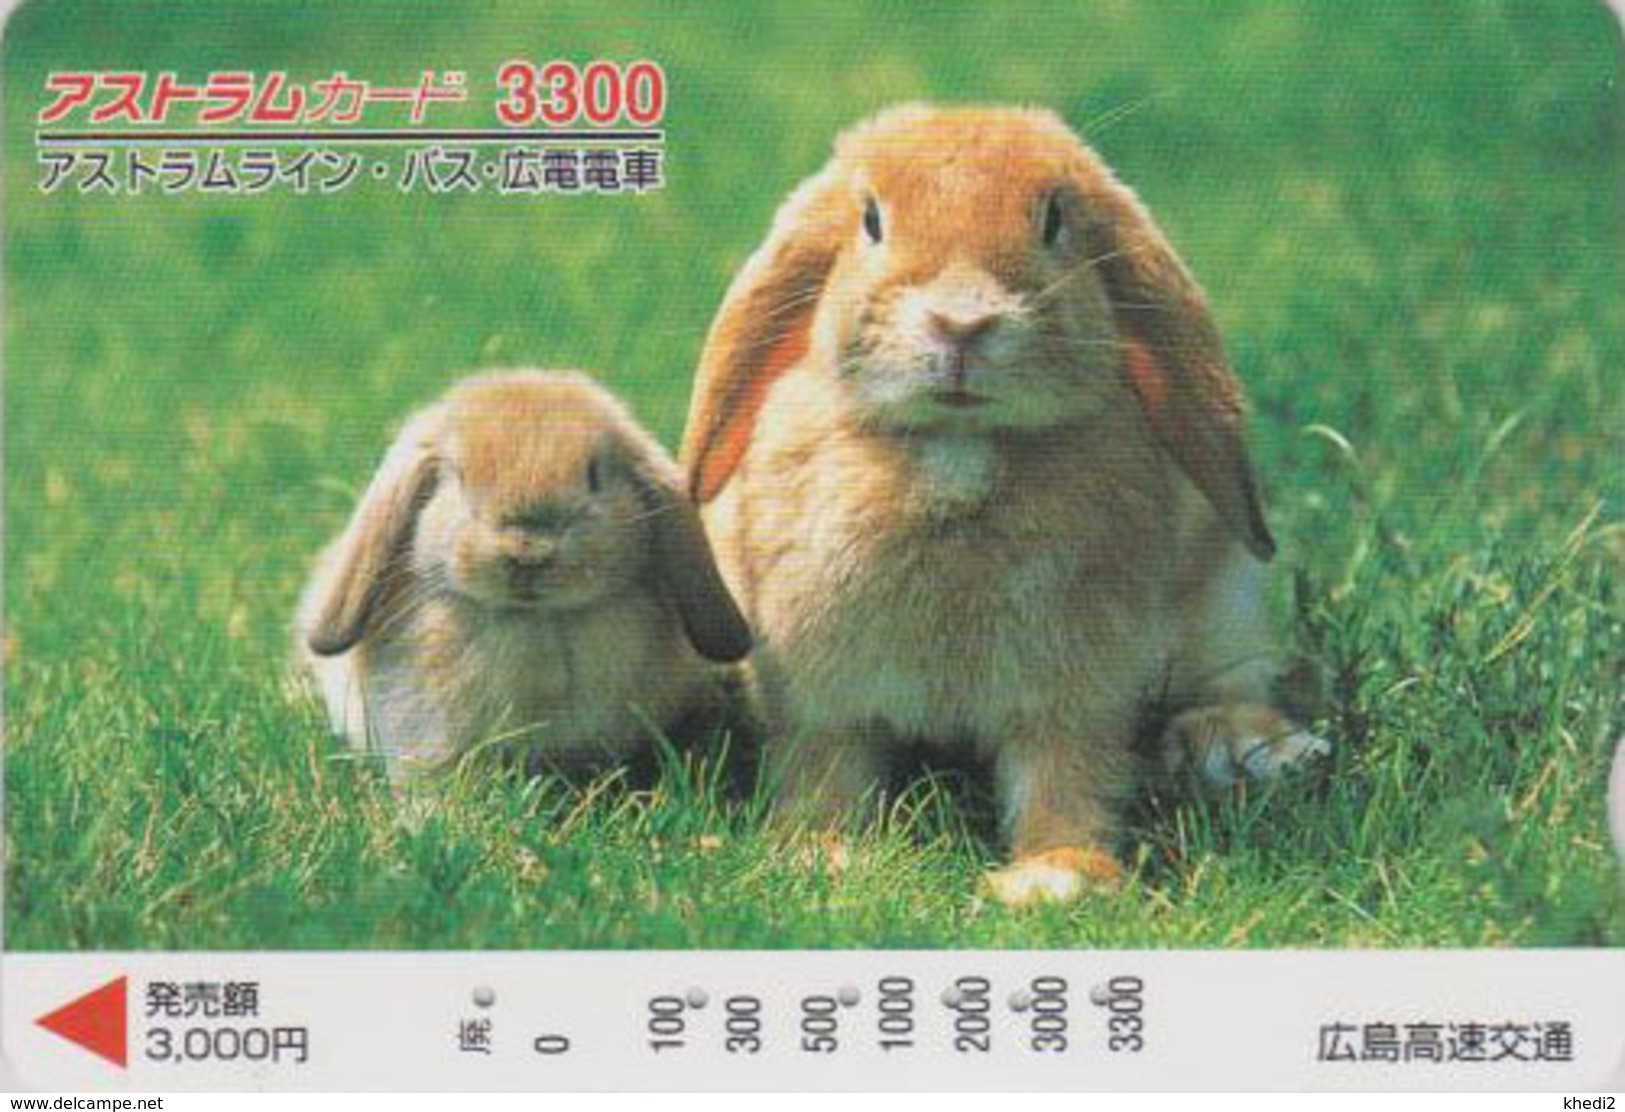 Carte Japon - ANIMAL - LAPIN & Bébé Lapereau 3300 - RABBIT Japan Prepaid Card - KANINCHEN CONIGLIO - FR BE 263 - Rabbits